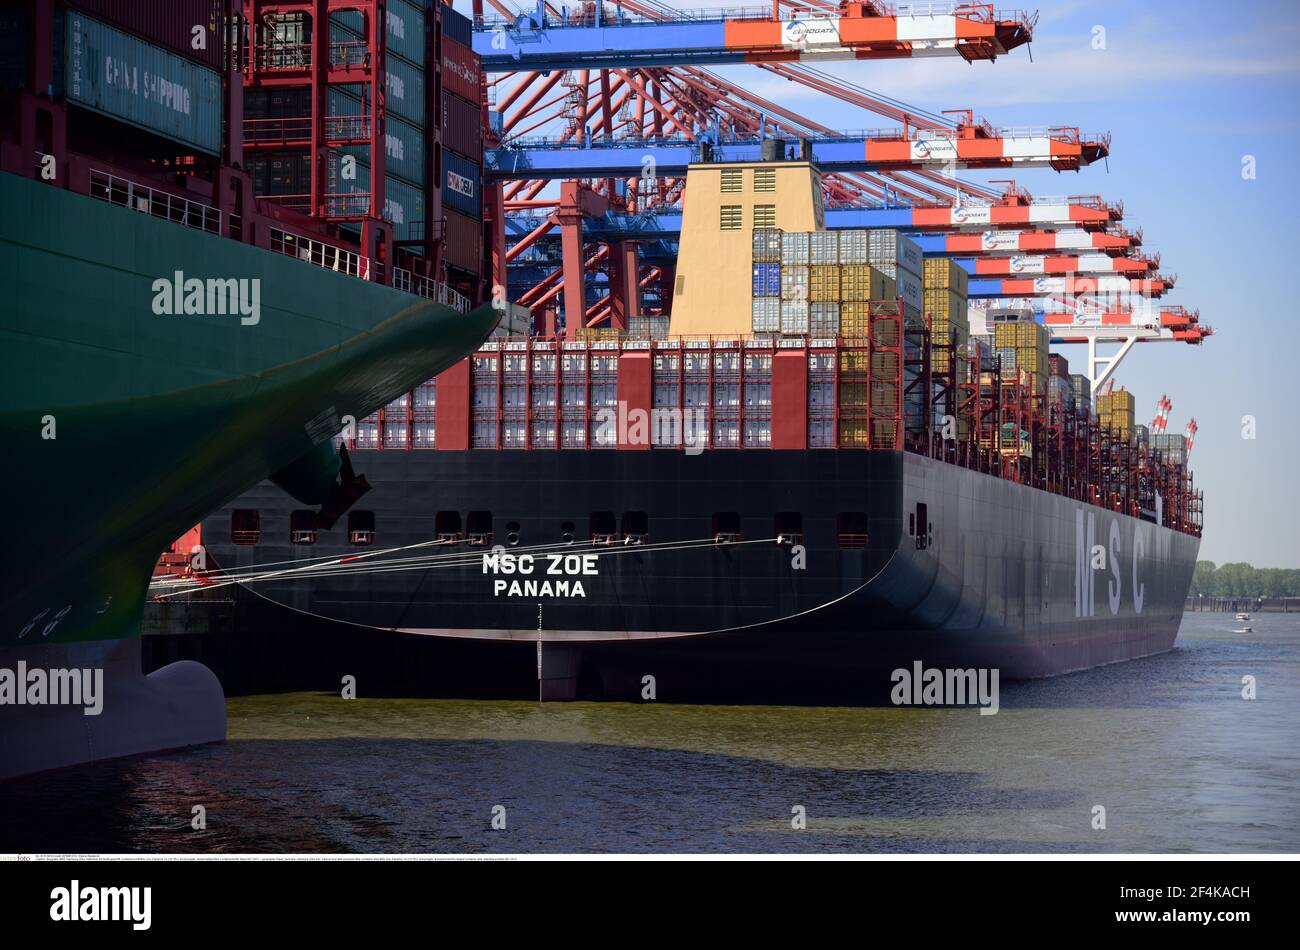 Géographie / Voyage, Allemagne, Hambourg, rivière Elbe, tour du port avec bateau d'excursion, navire à conteneurs MSC, droits supplémentaires-déstockage-Info-non-disponible Banque D'Images